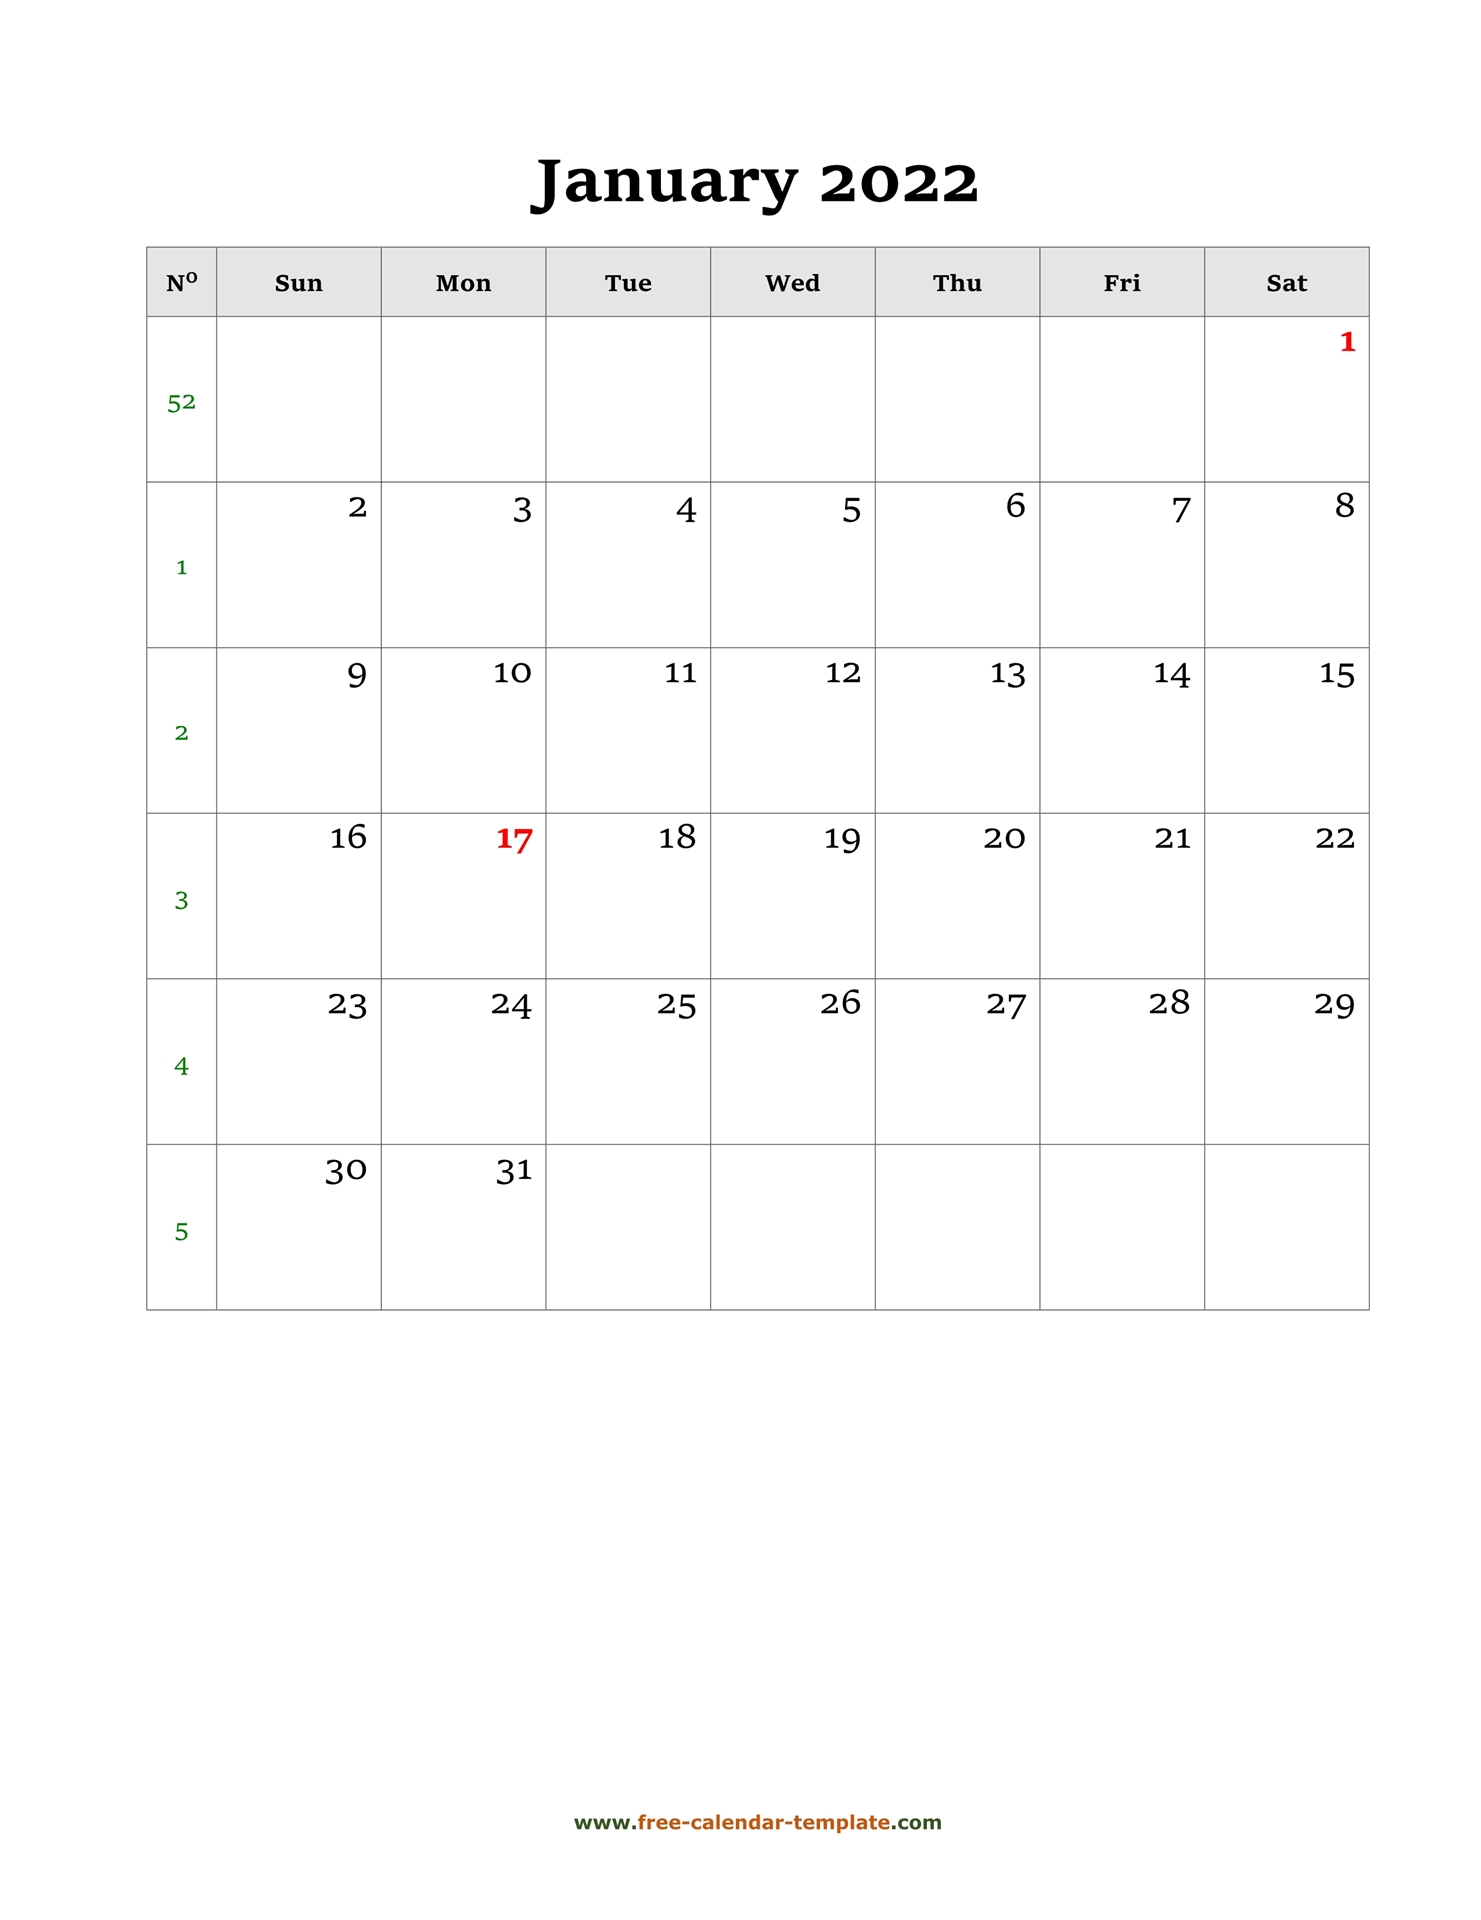 Get Free Calendar For January 2022